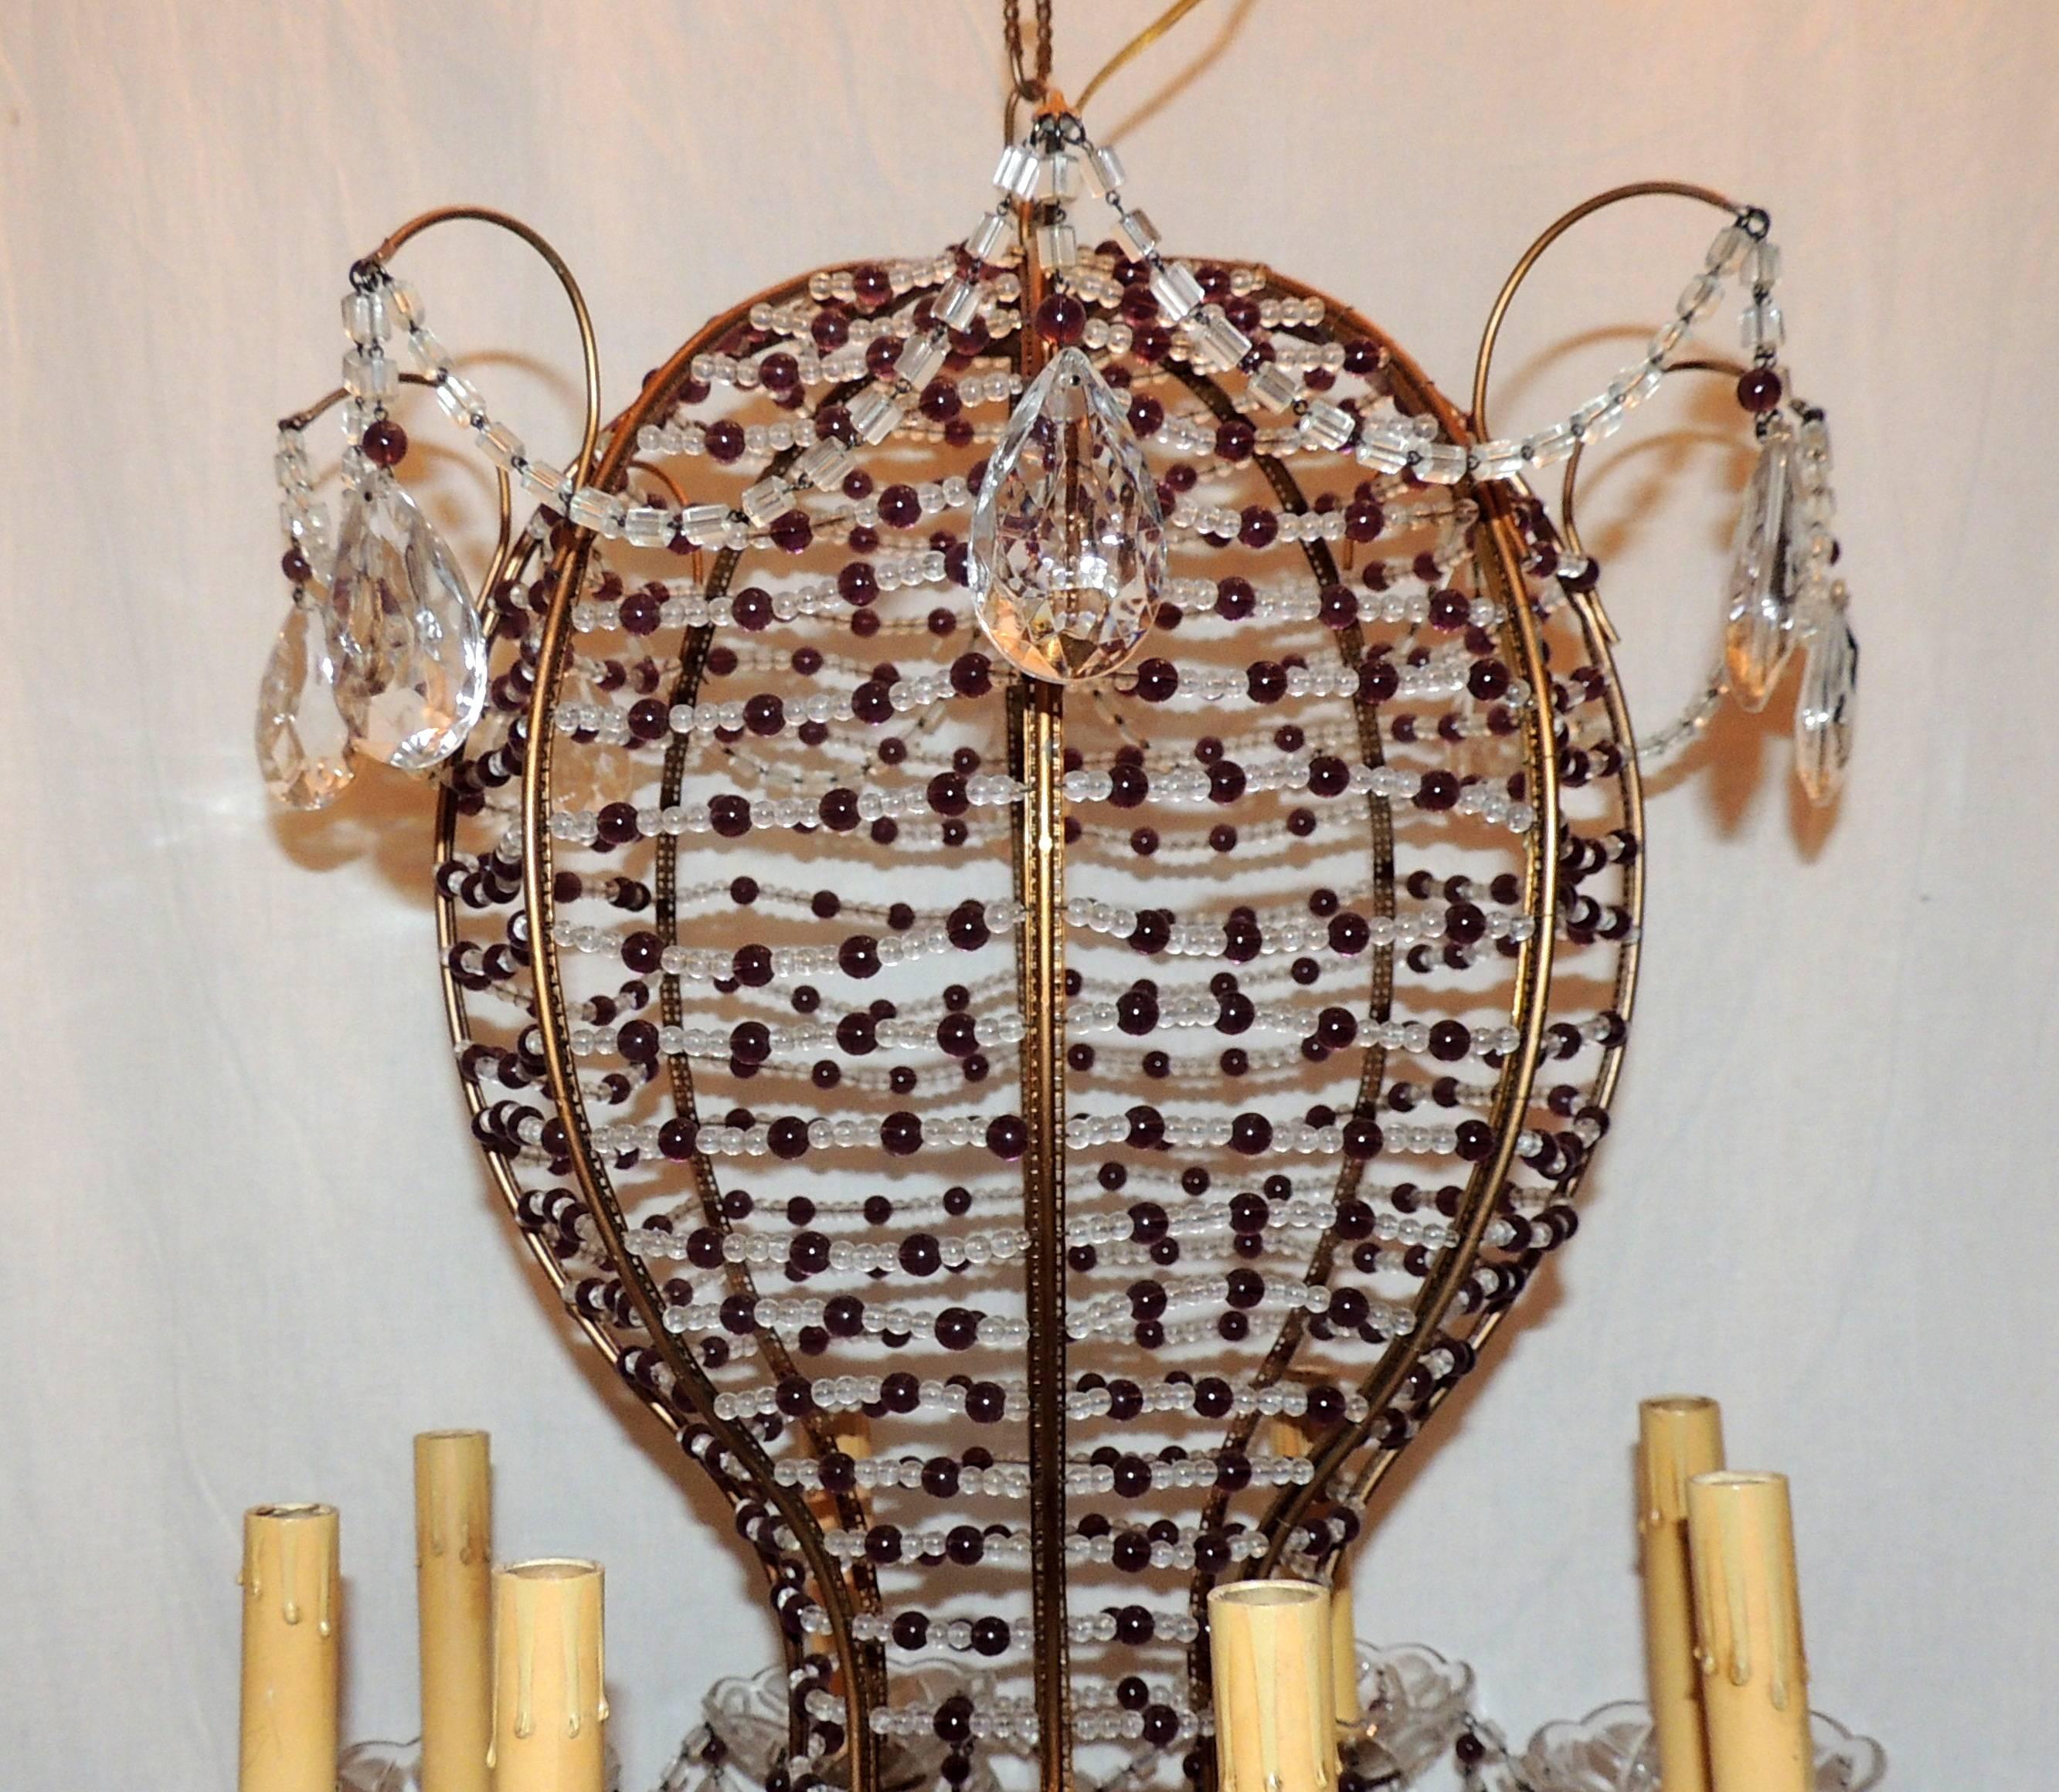 Un lustre italien en forme de montgolfière en cristal améthyste pourpre et clair, finement perlé, avec huit lumières.